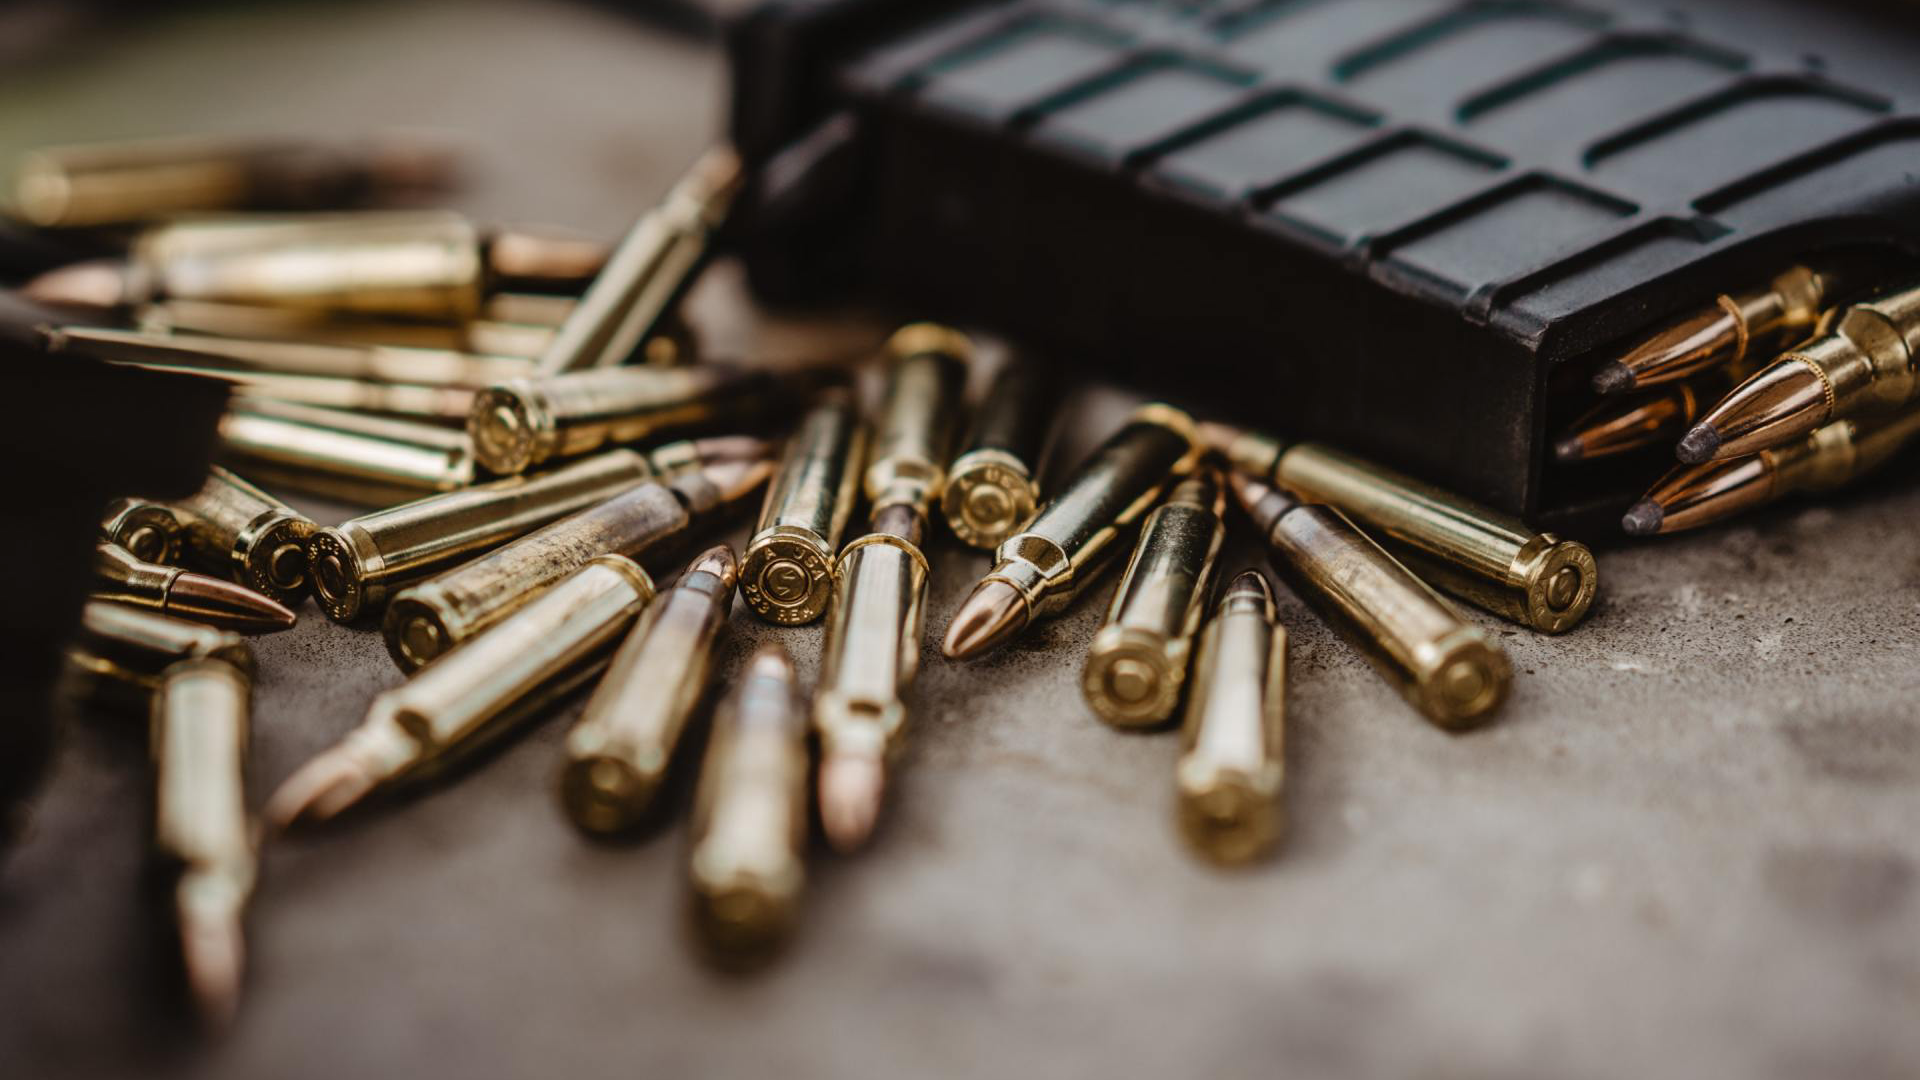 Bullets - Felon in Possession of a Firearm in Alabama